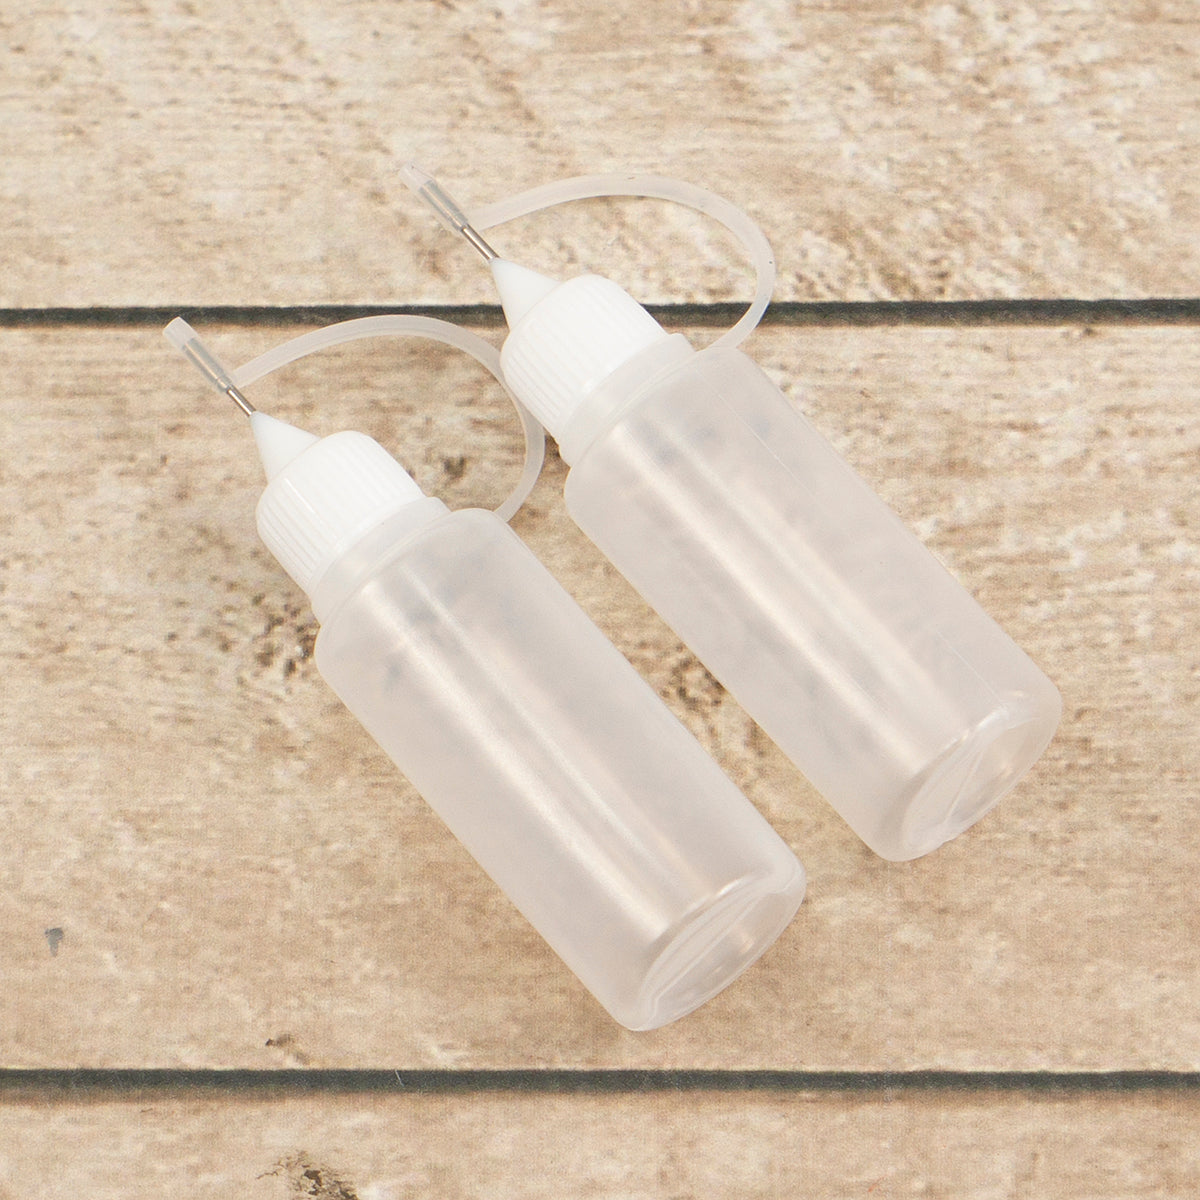 Fine Line Applicator Bottles for Liquid Stringer | Art Glass Supplies - To